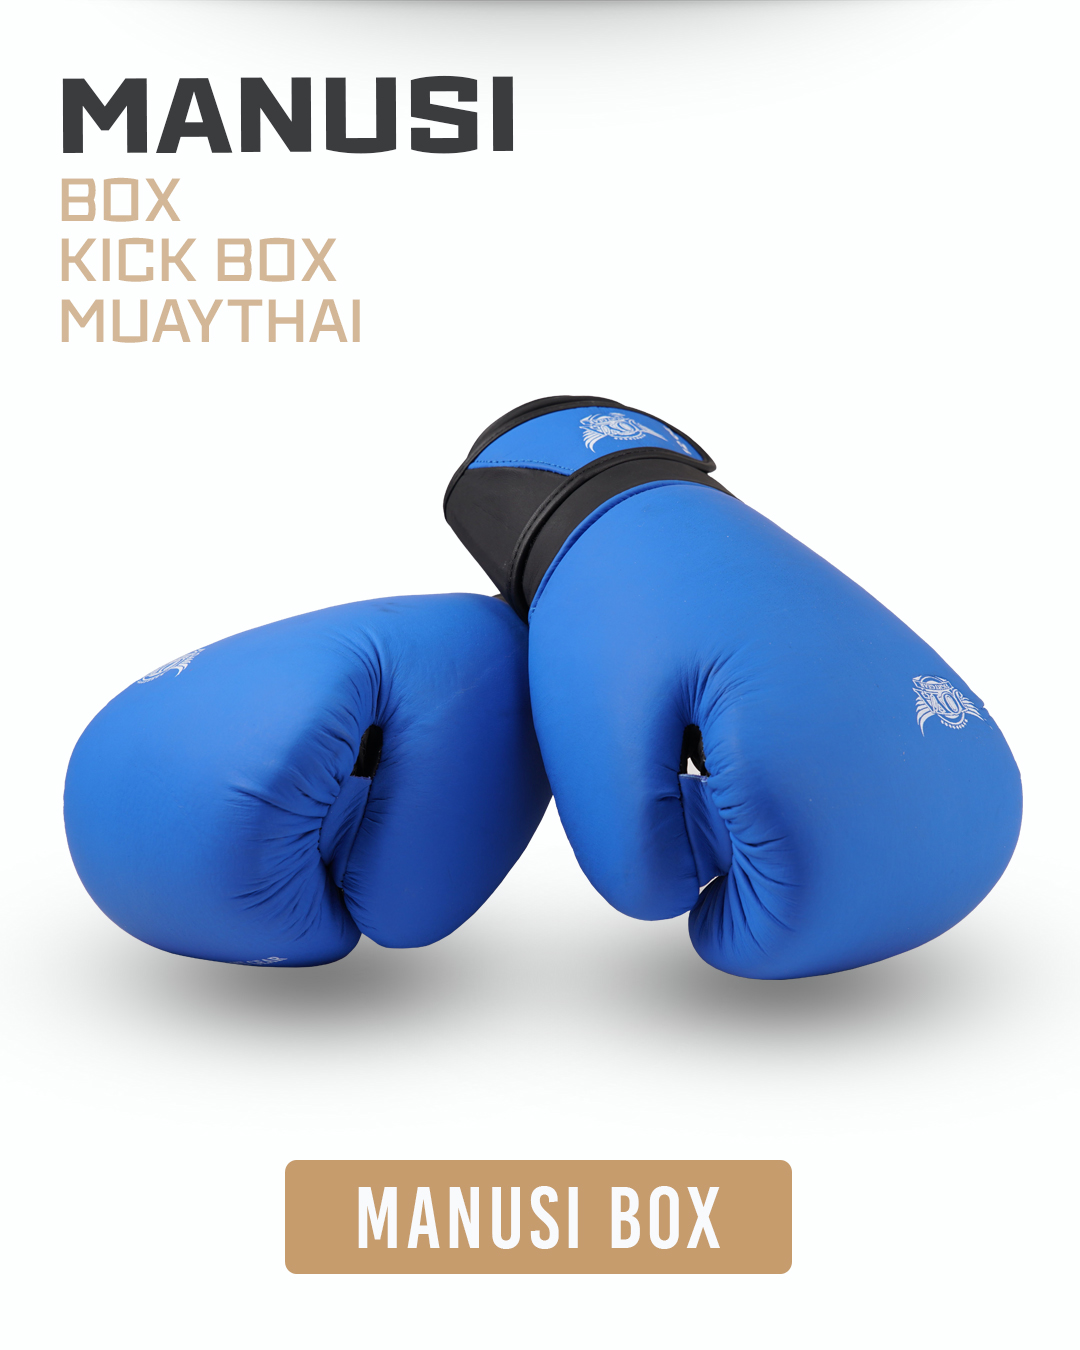 Manusi Box | Manusi Kickbox